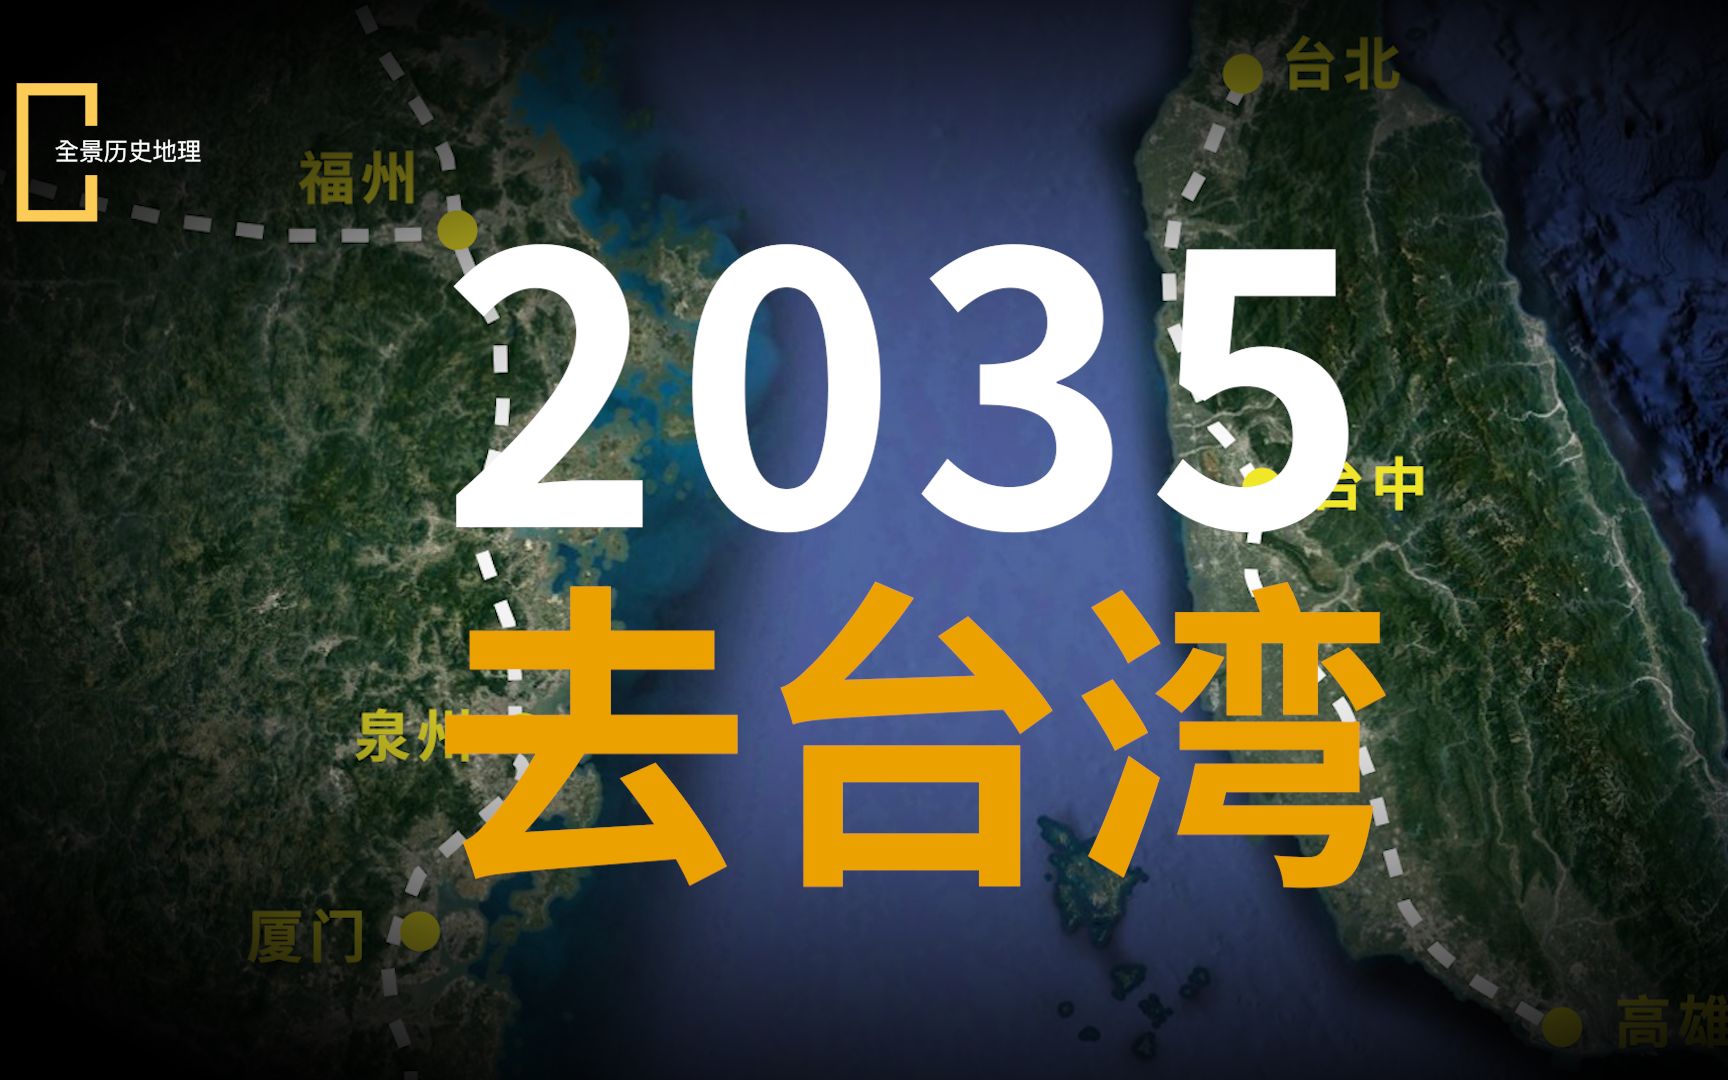 2035去台湾葫芦丝简谱图片